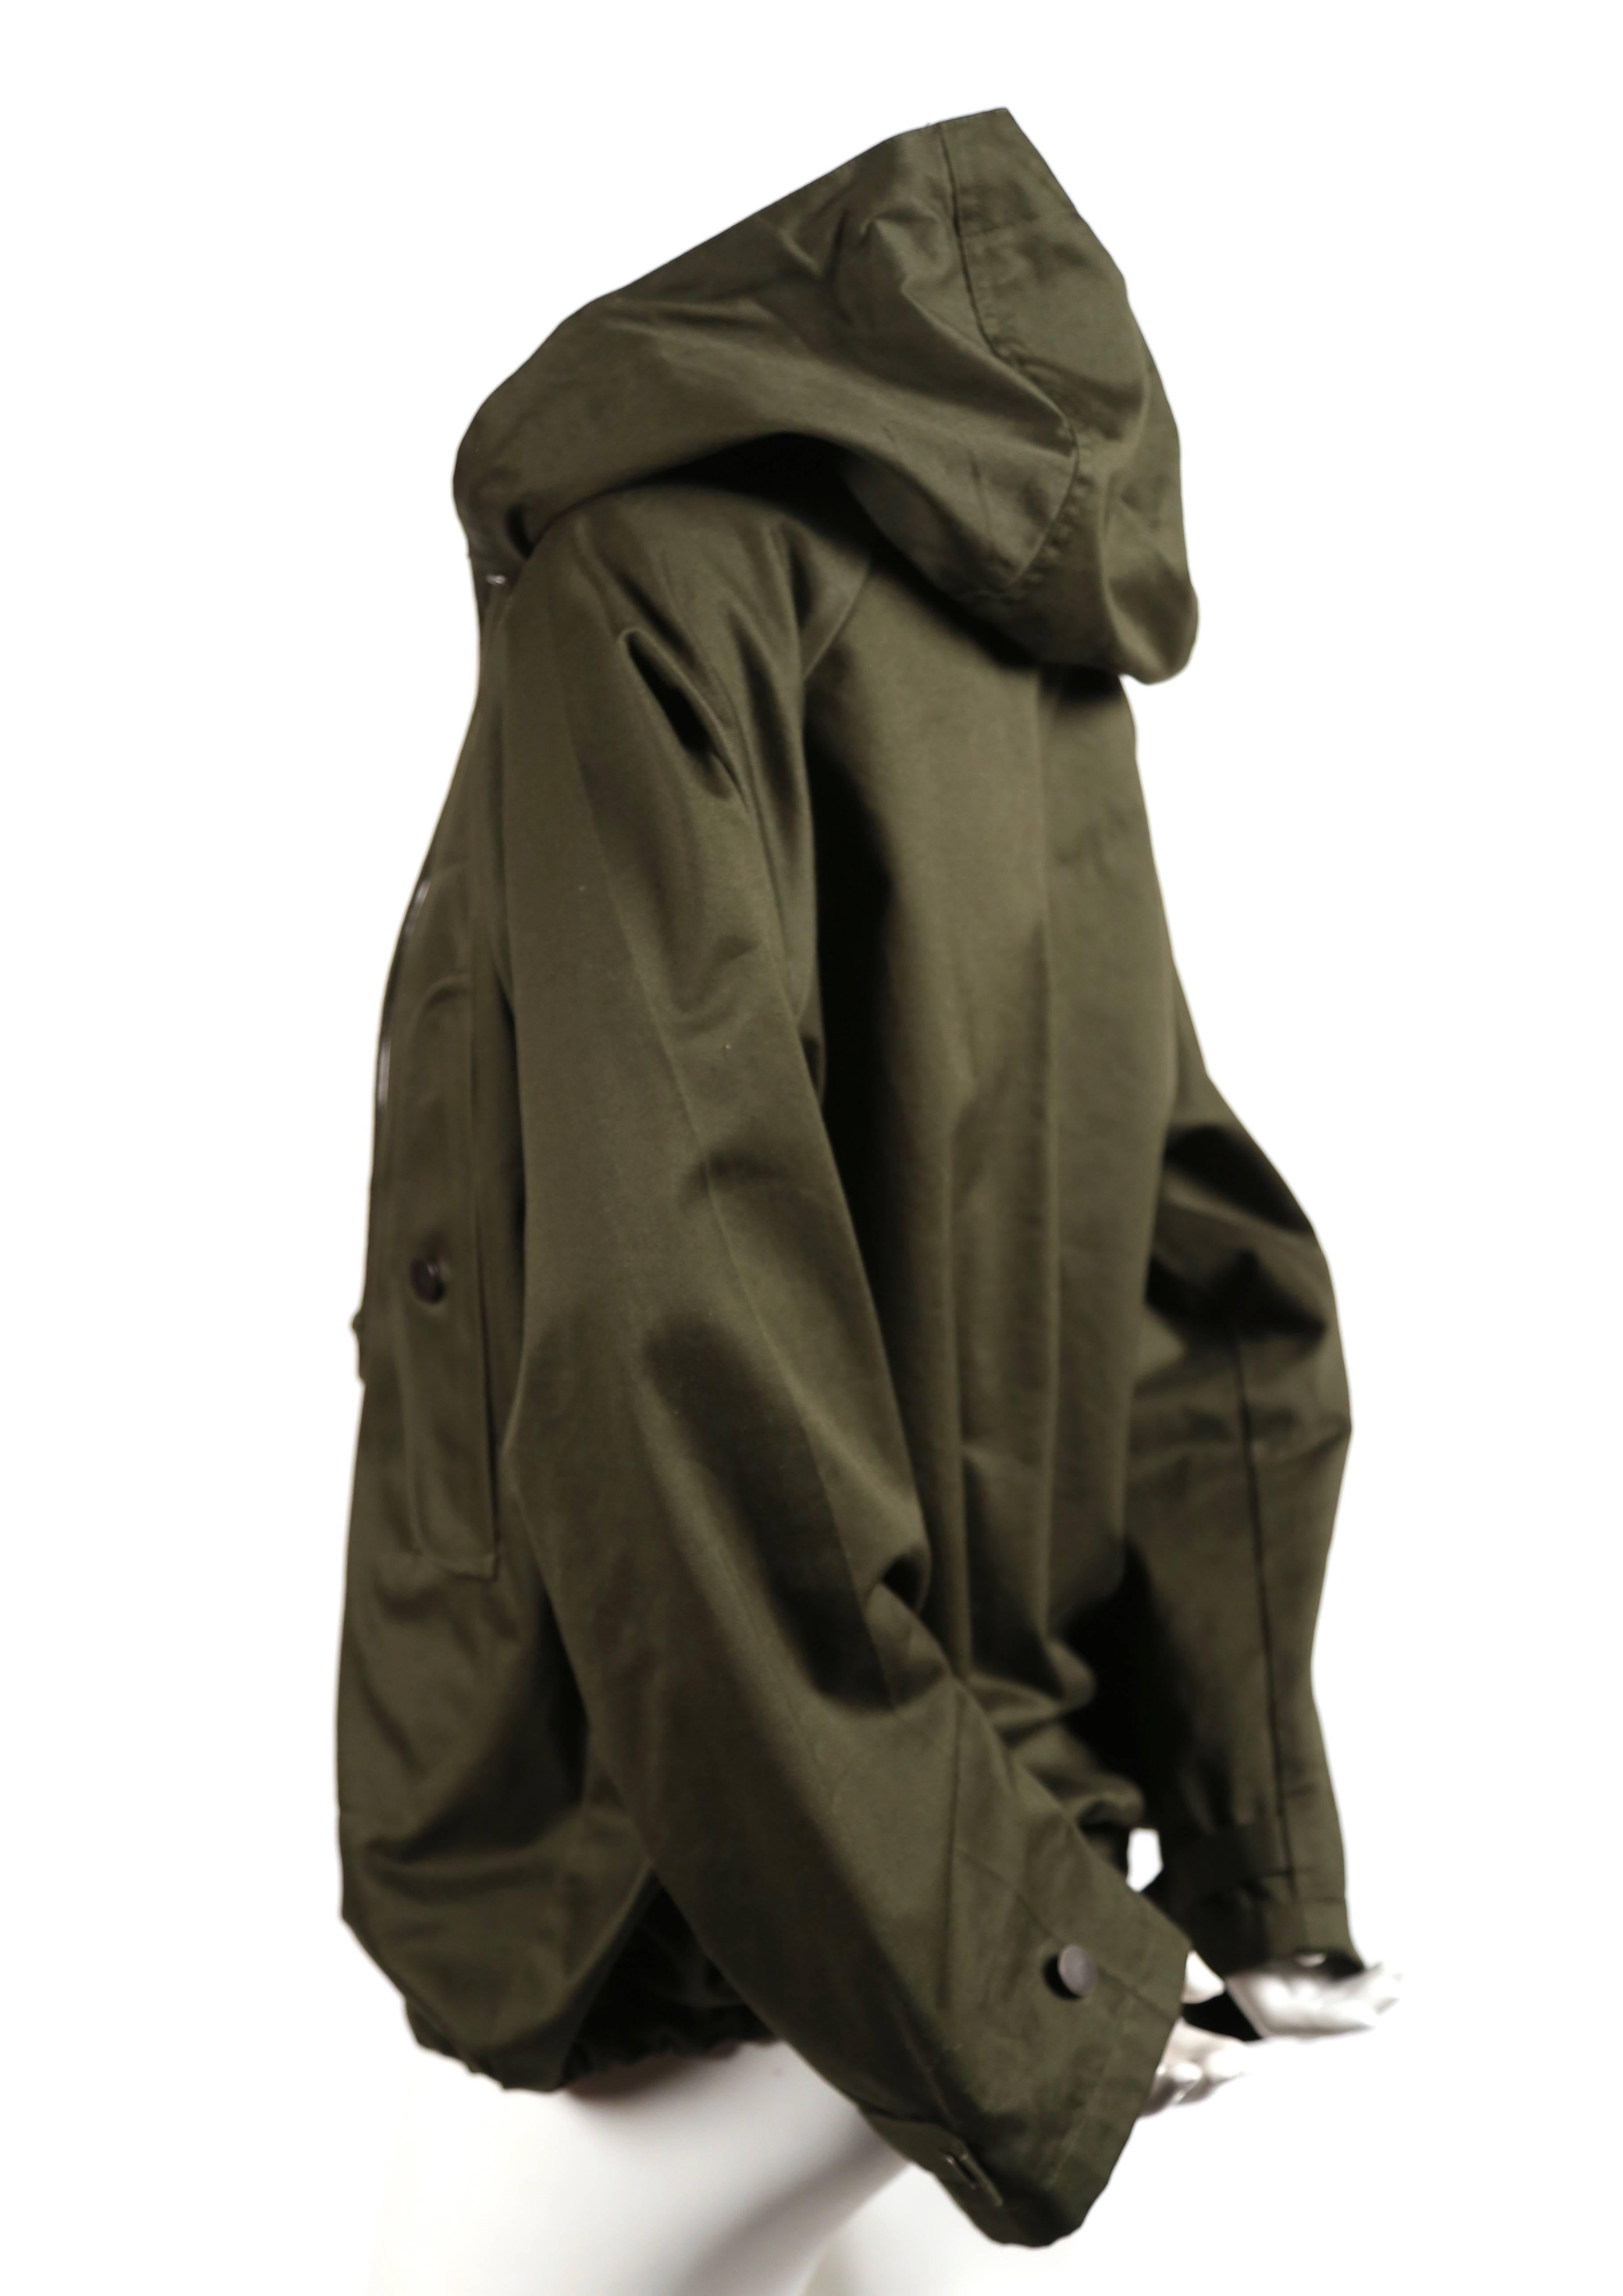 Veste anorak en coton poli vert armée conçue par Phoebe Philo pour Celine. Taille française M. Mesures approximatives : épaule 16